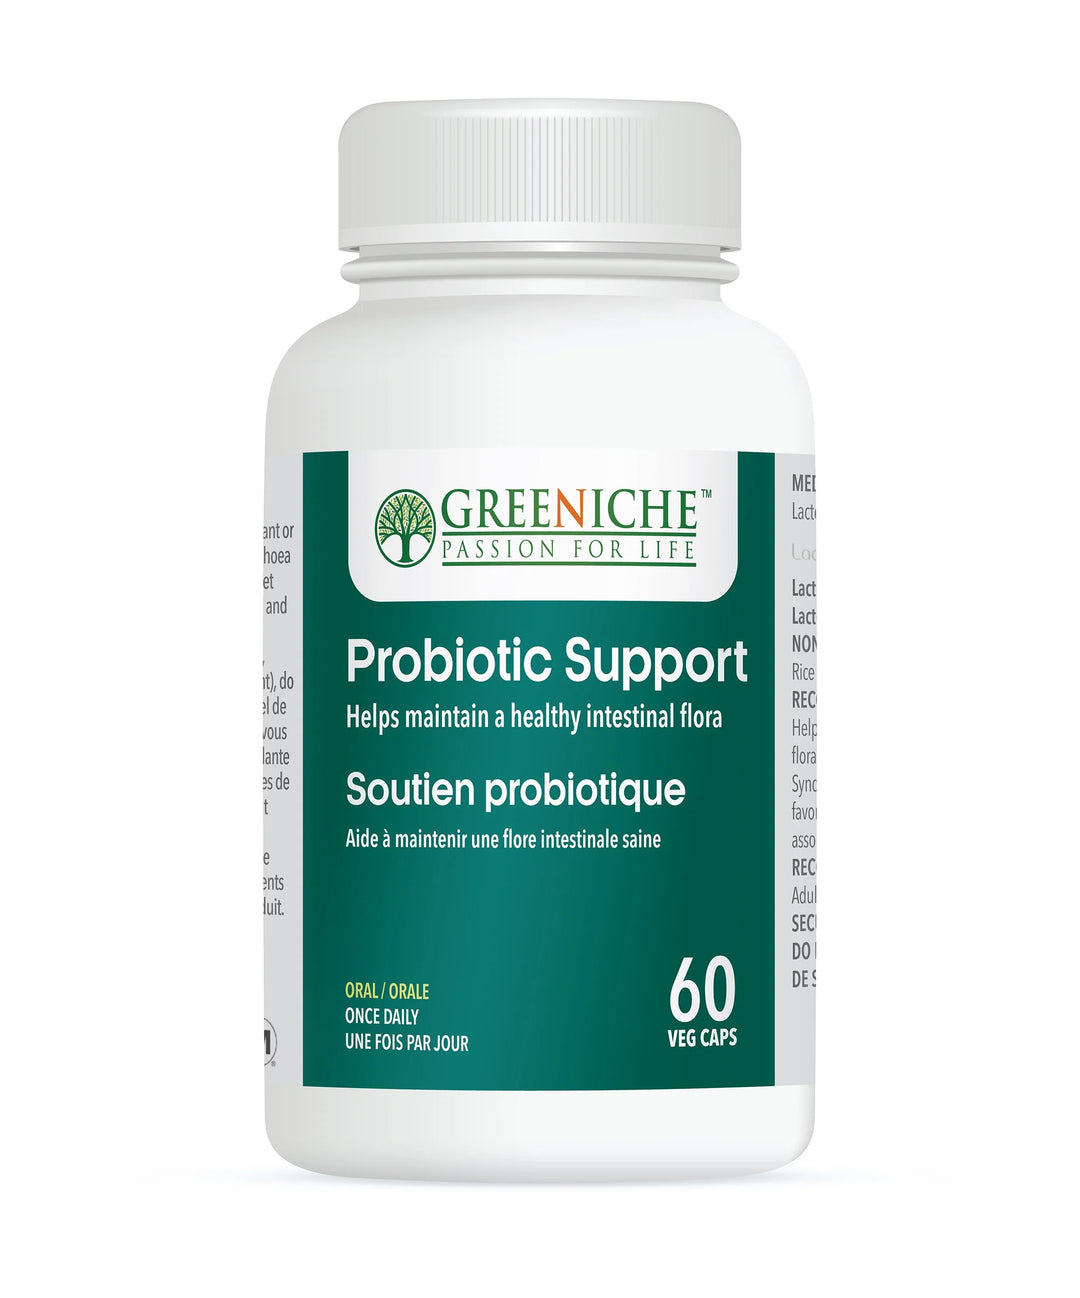 Greeniche Probiotic Support